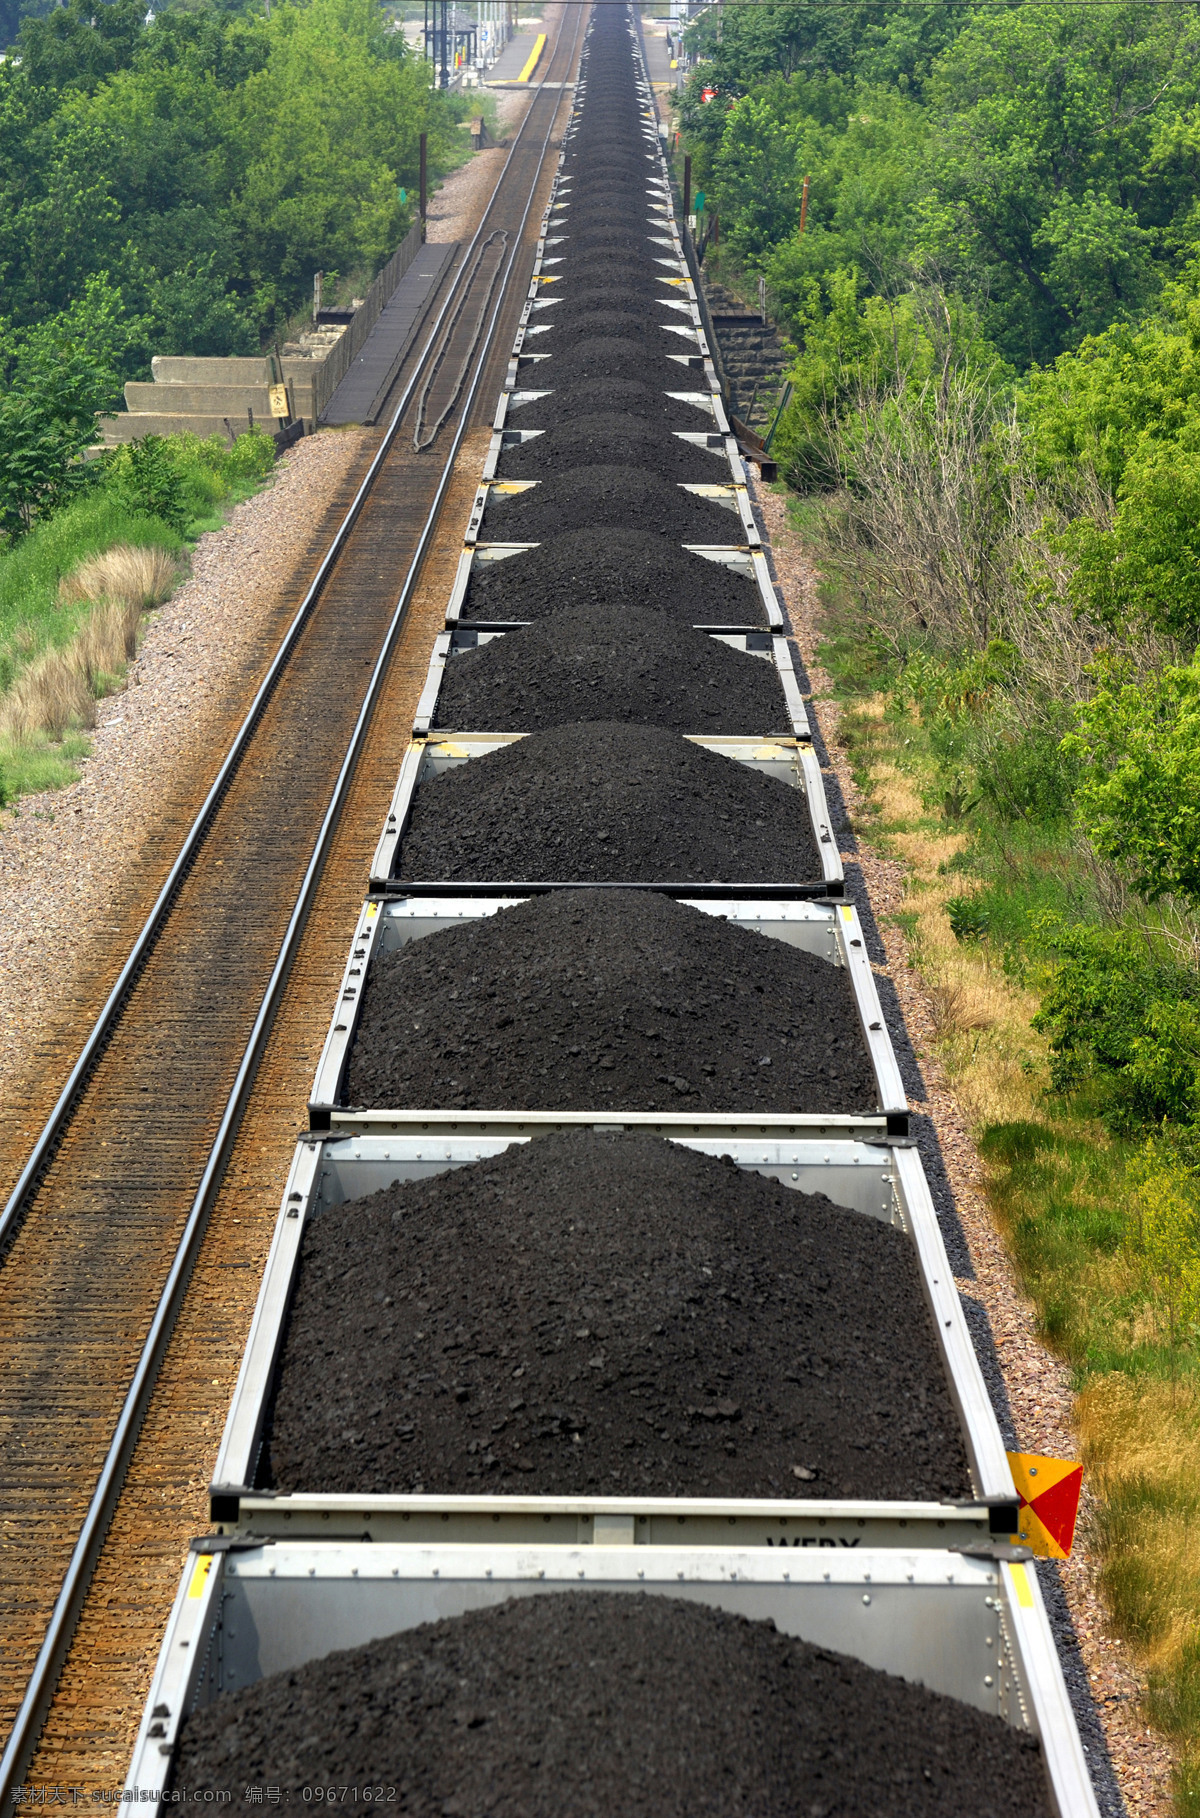 煤炭运输 煤炭 煤场 工业生产 现代科技